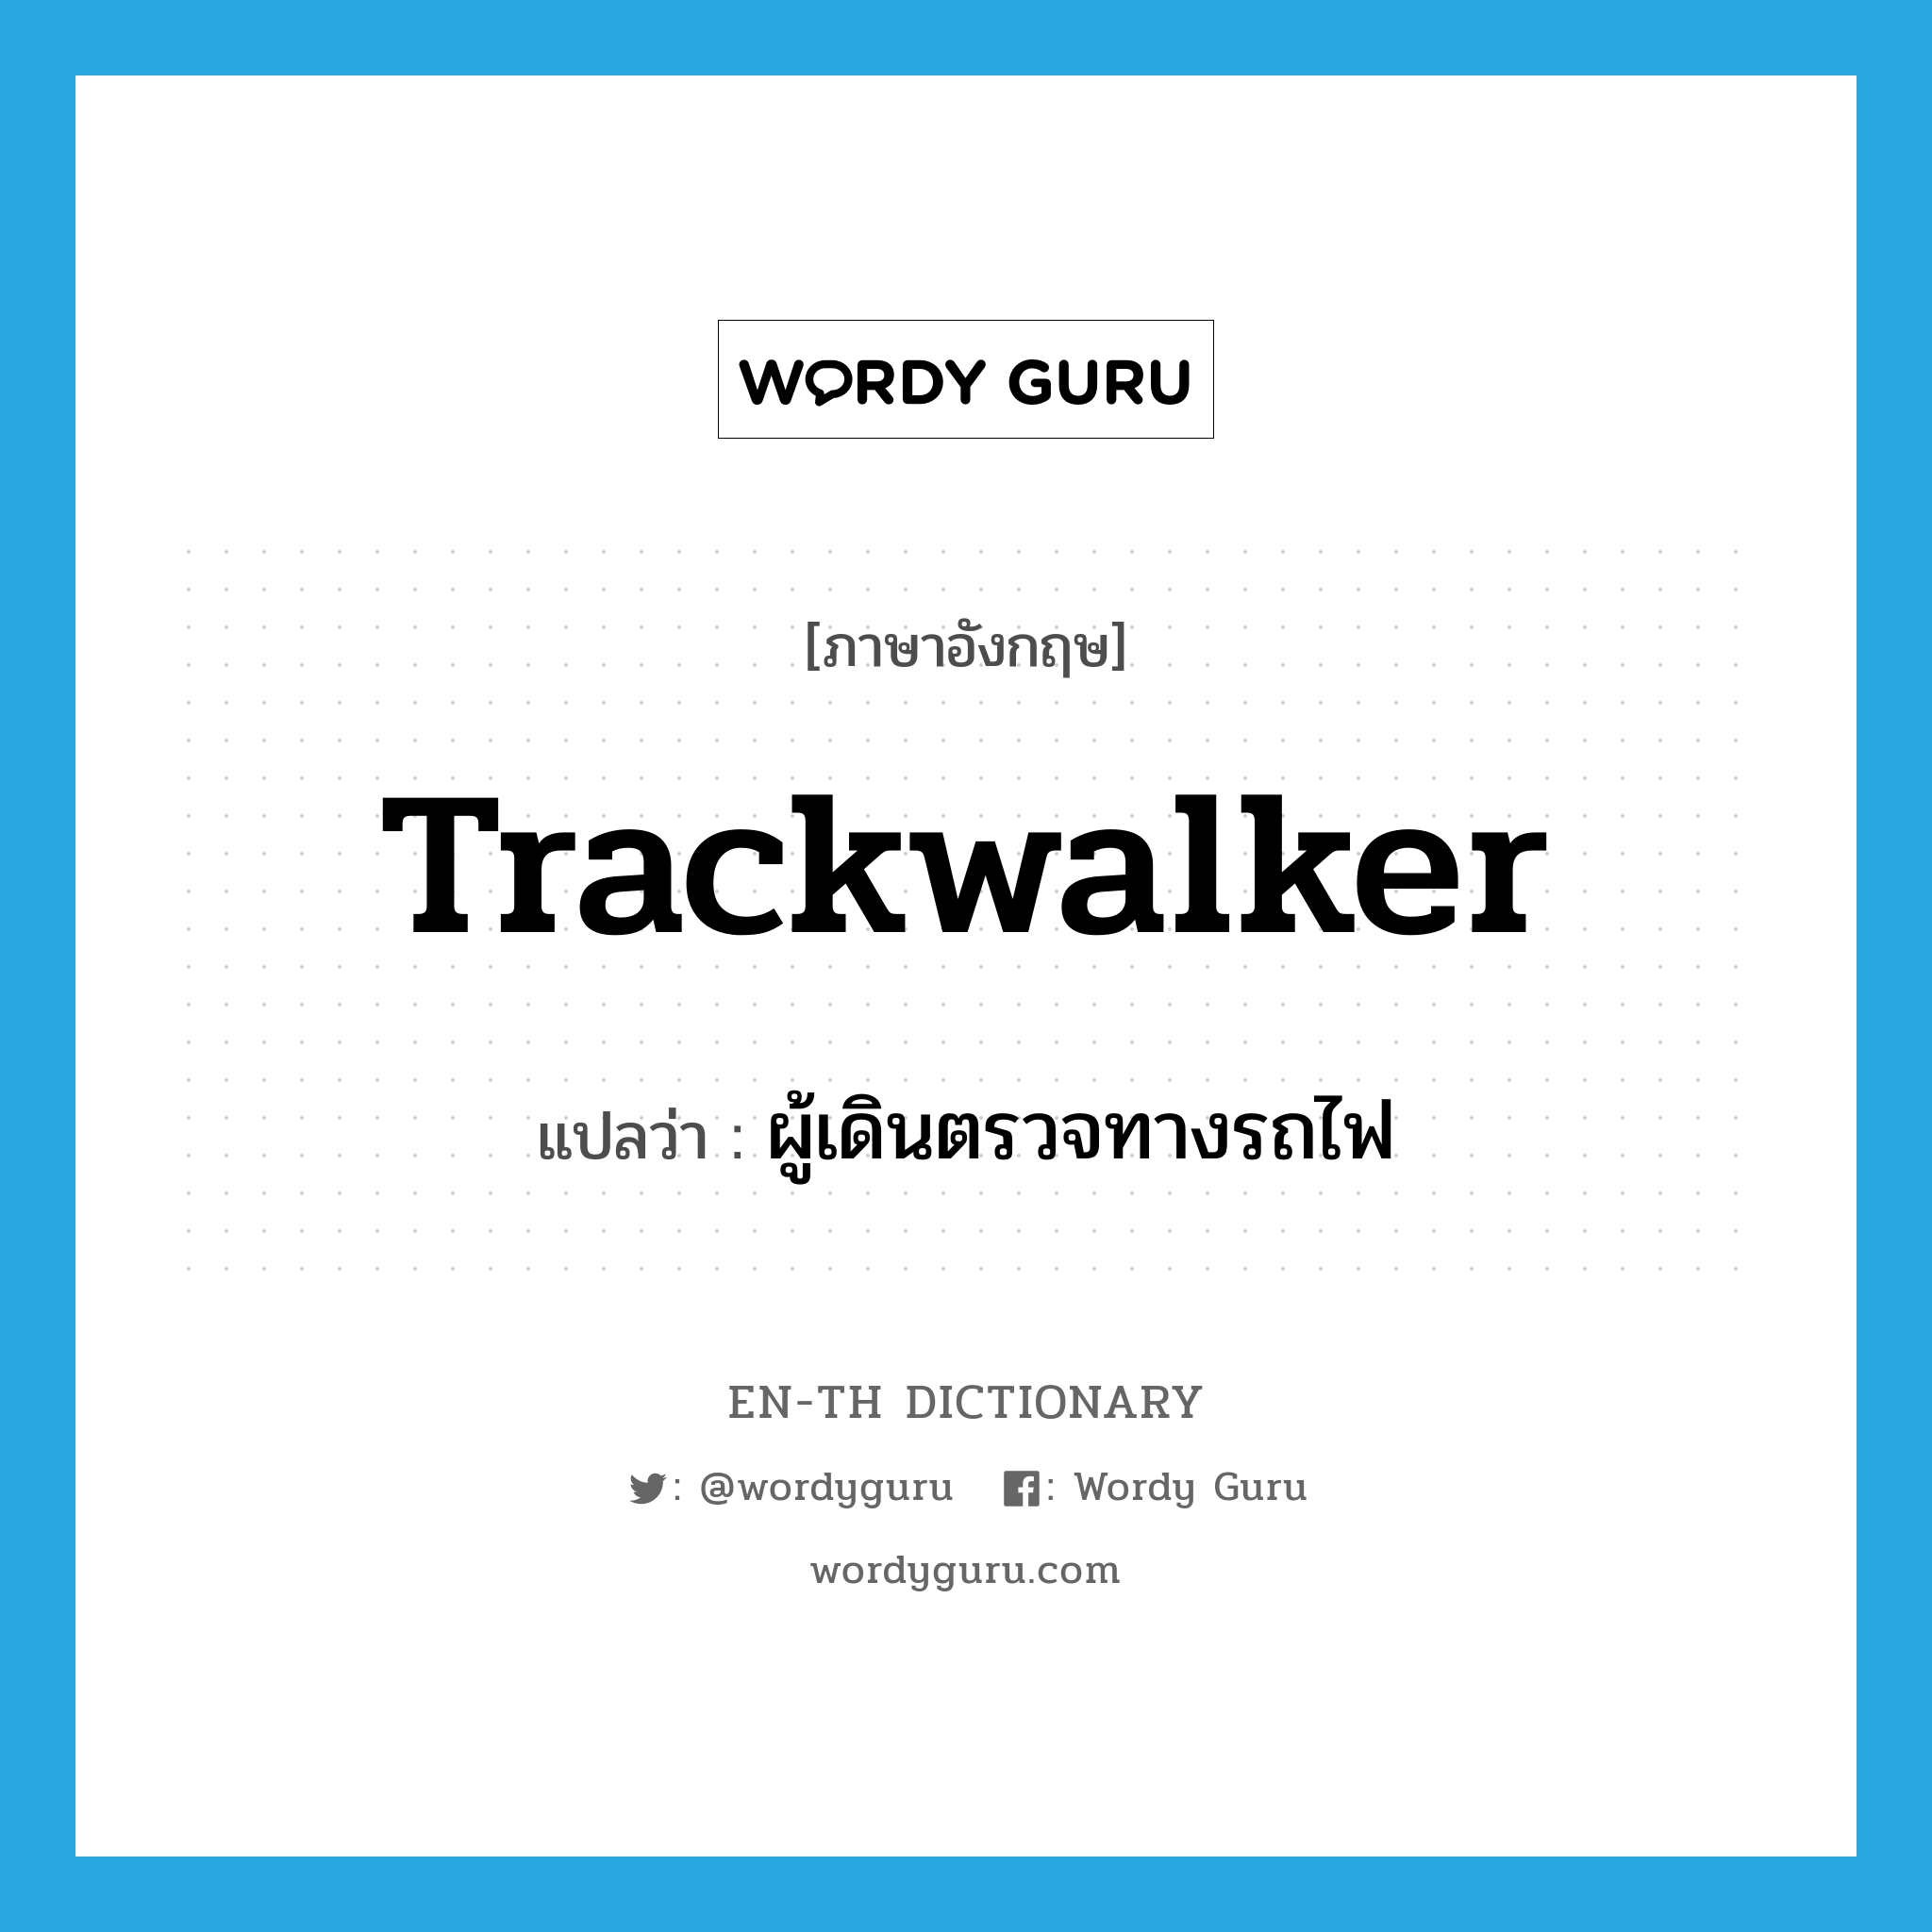 trackwalker แปลว่า?, คำศัพท์ภาษาอังกฤษ trackwalker แปลว่า ผู้เดินตรวจทางรถไฟ ประเภท N หมวด N